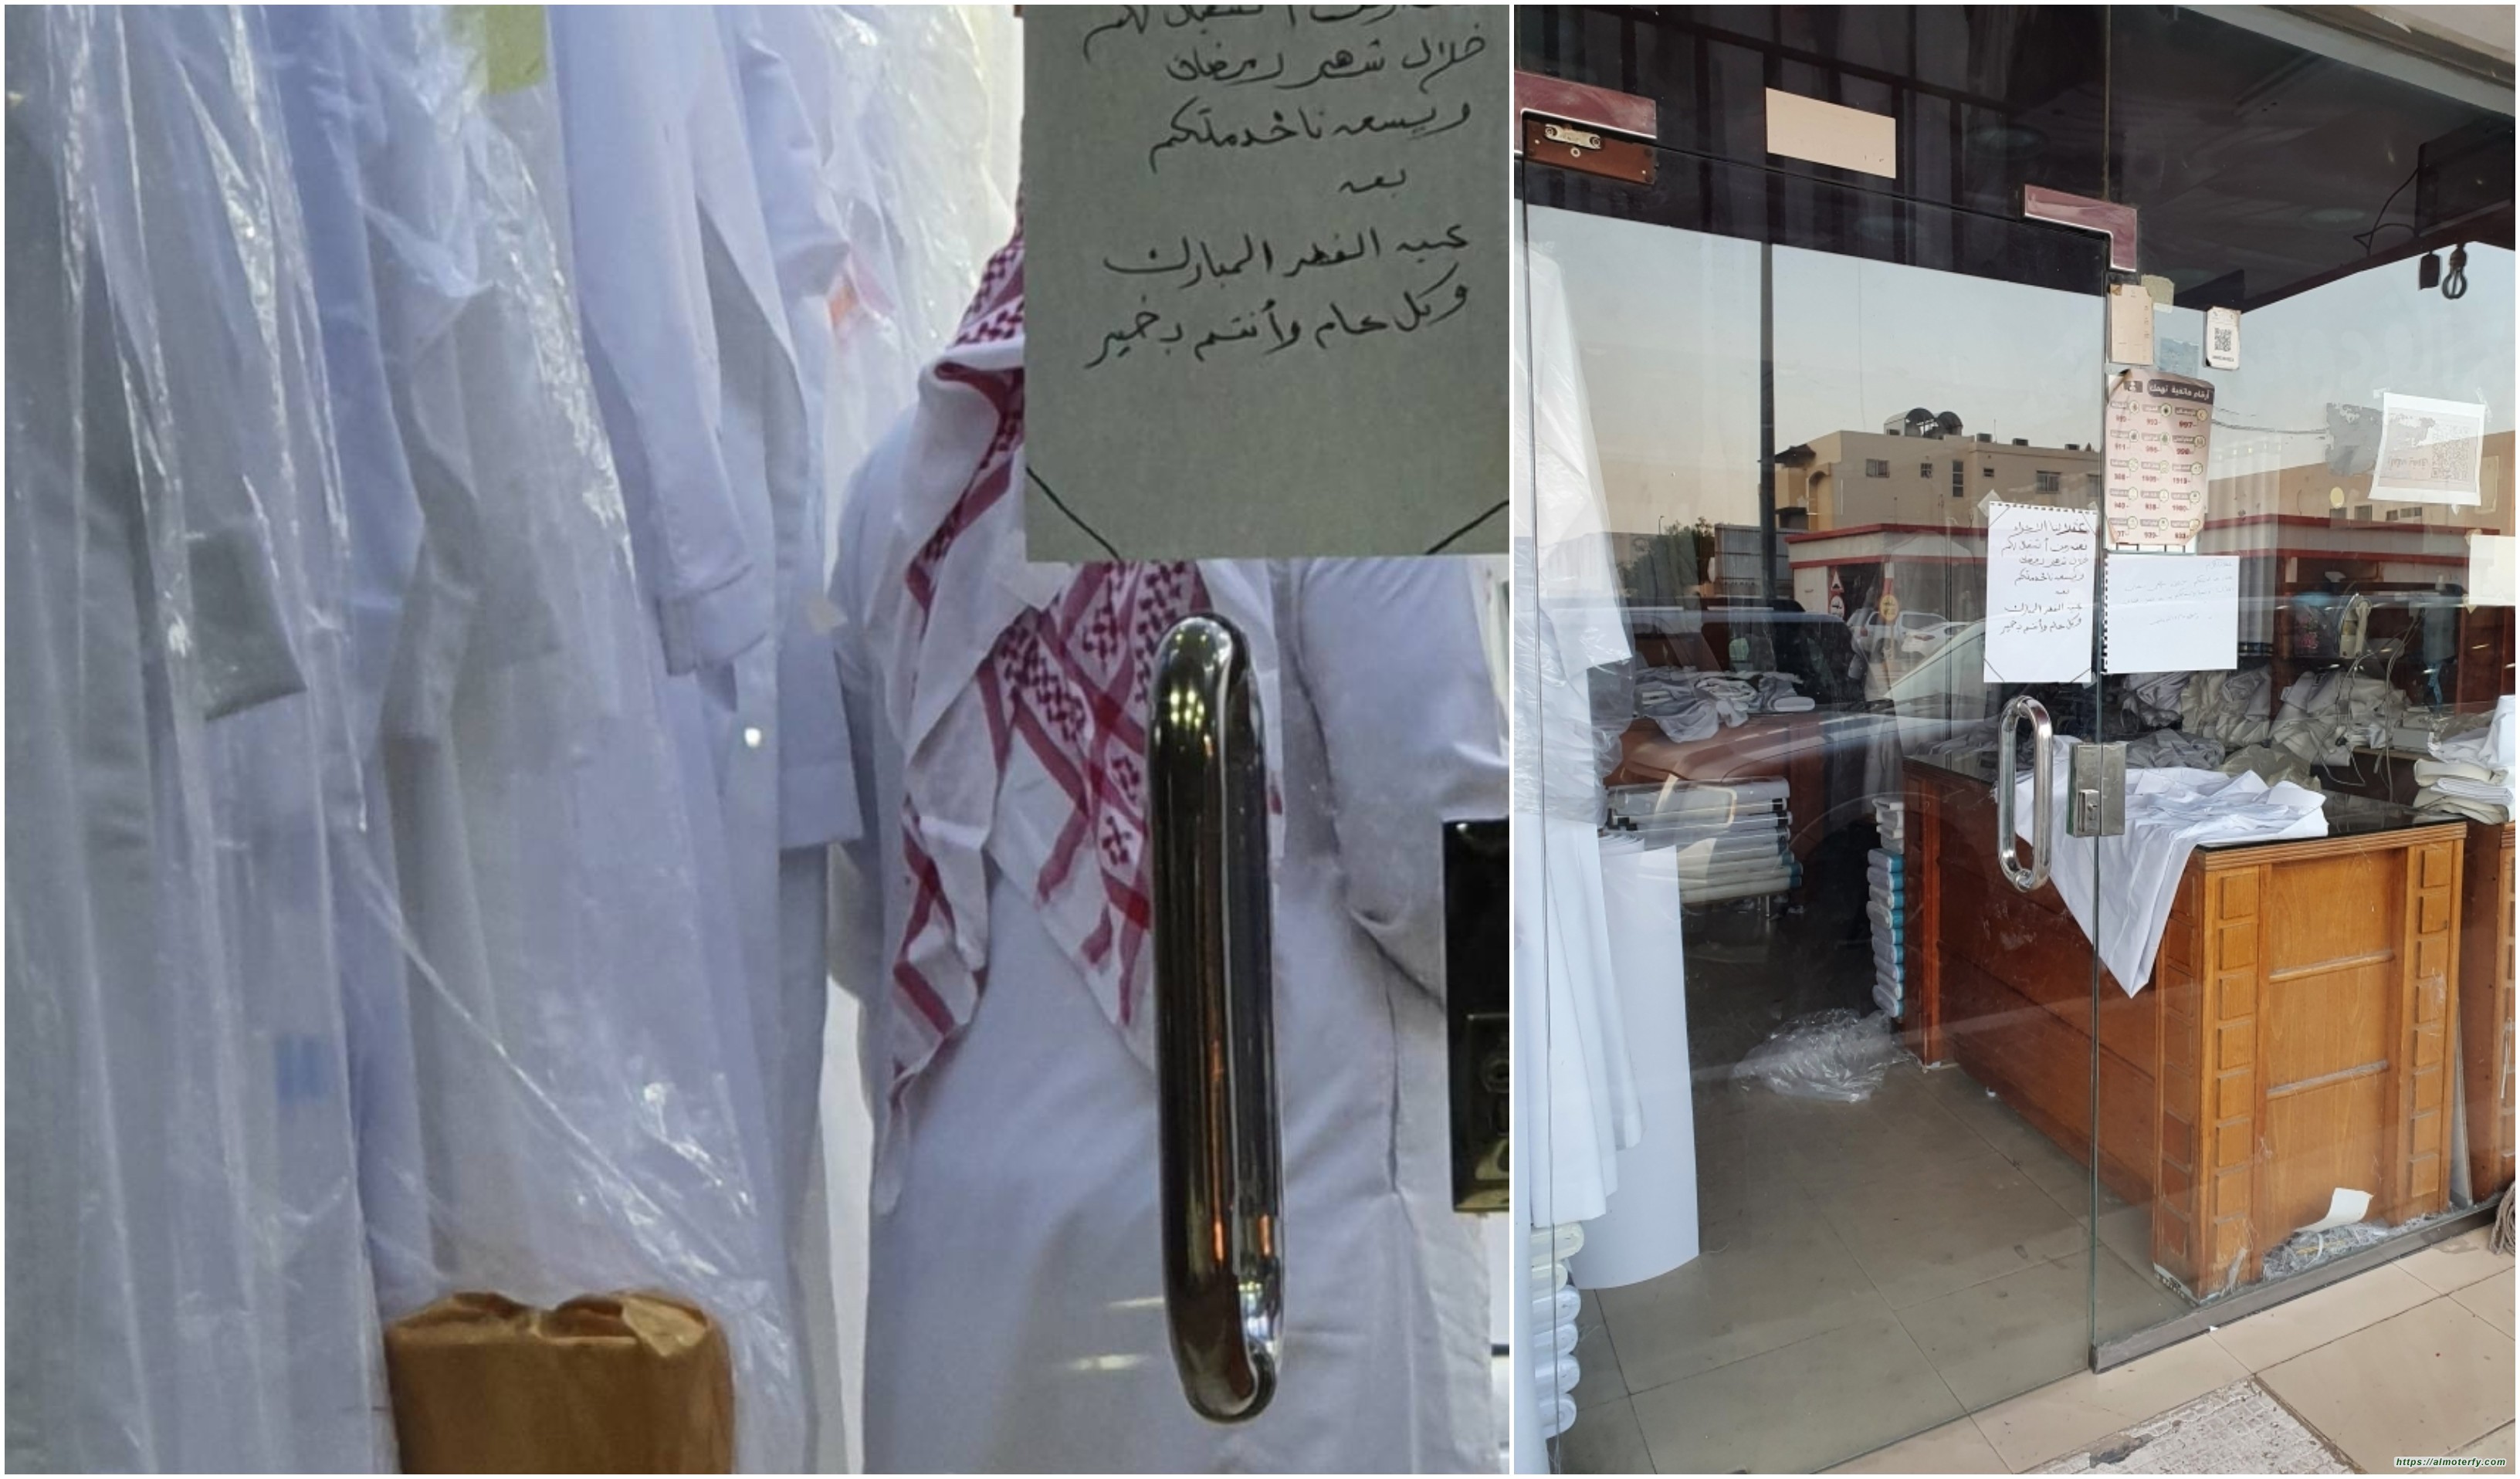 رمضان يرفع لافتات الاعتذار على محلات الخياطة